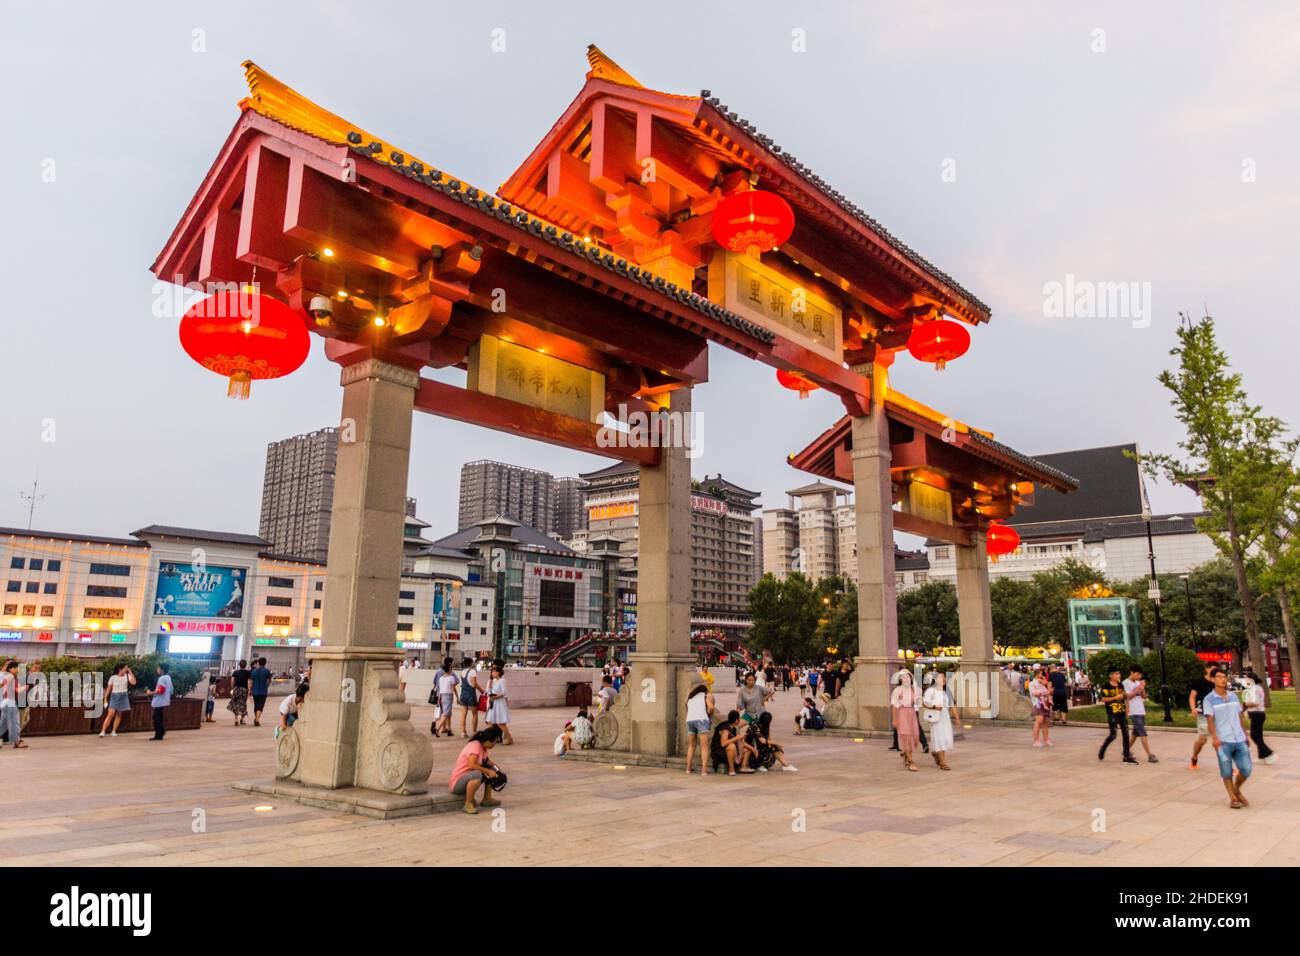 XI'AN, CHINE - 5 AOÛT 2018 : arche devant la Grande Pagode de l'OIE sauvage à Xi'an, Chine Banque D'Images